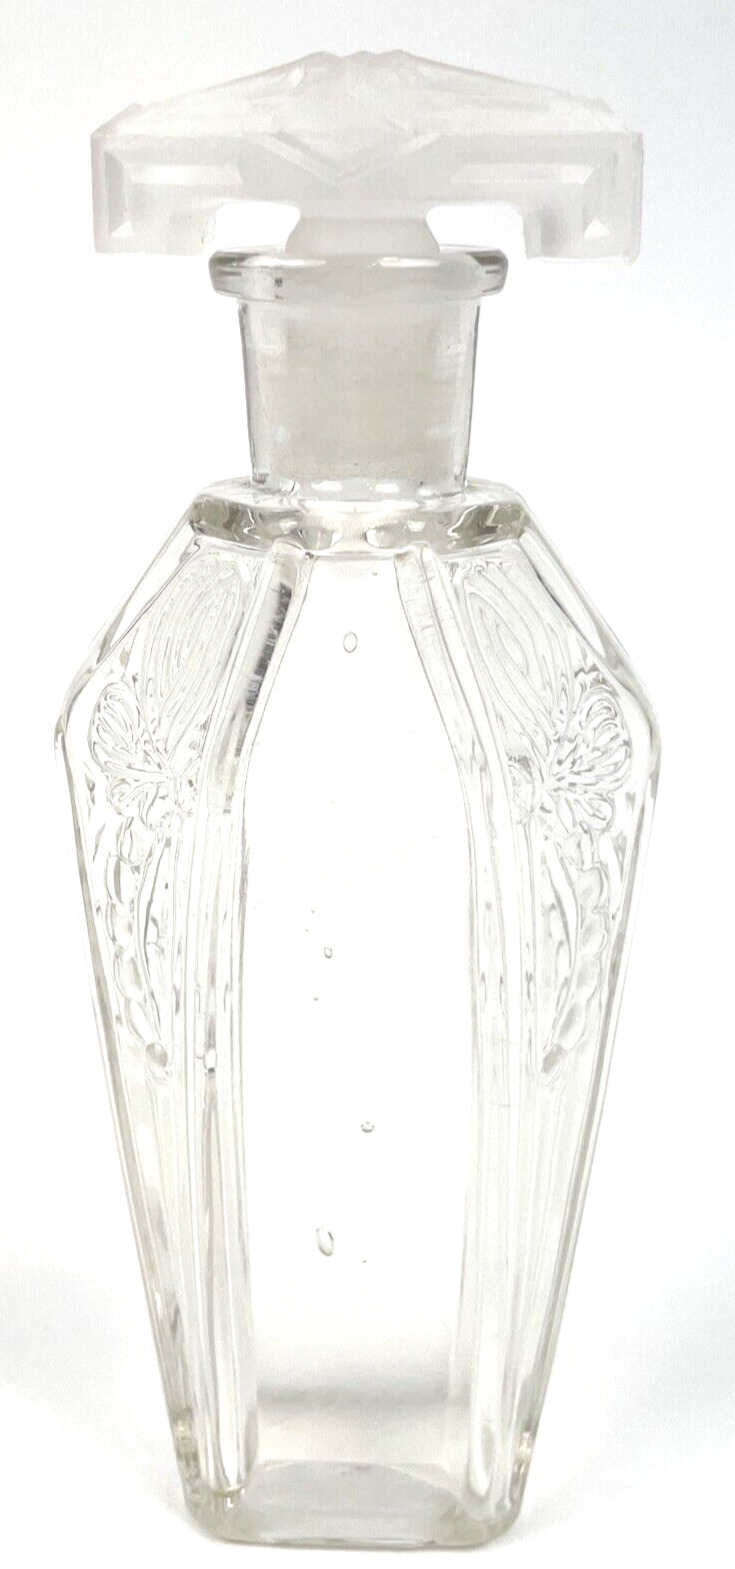 Vintage Perfume Bottle Mavis Vivaudou Art Nouveau Dragonfly 1920's Deco Toilette